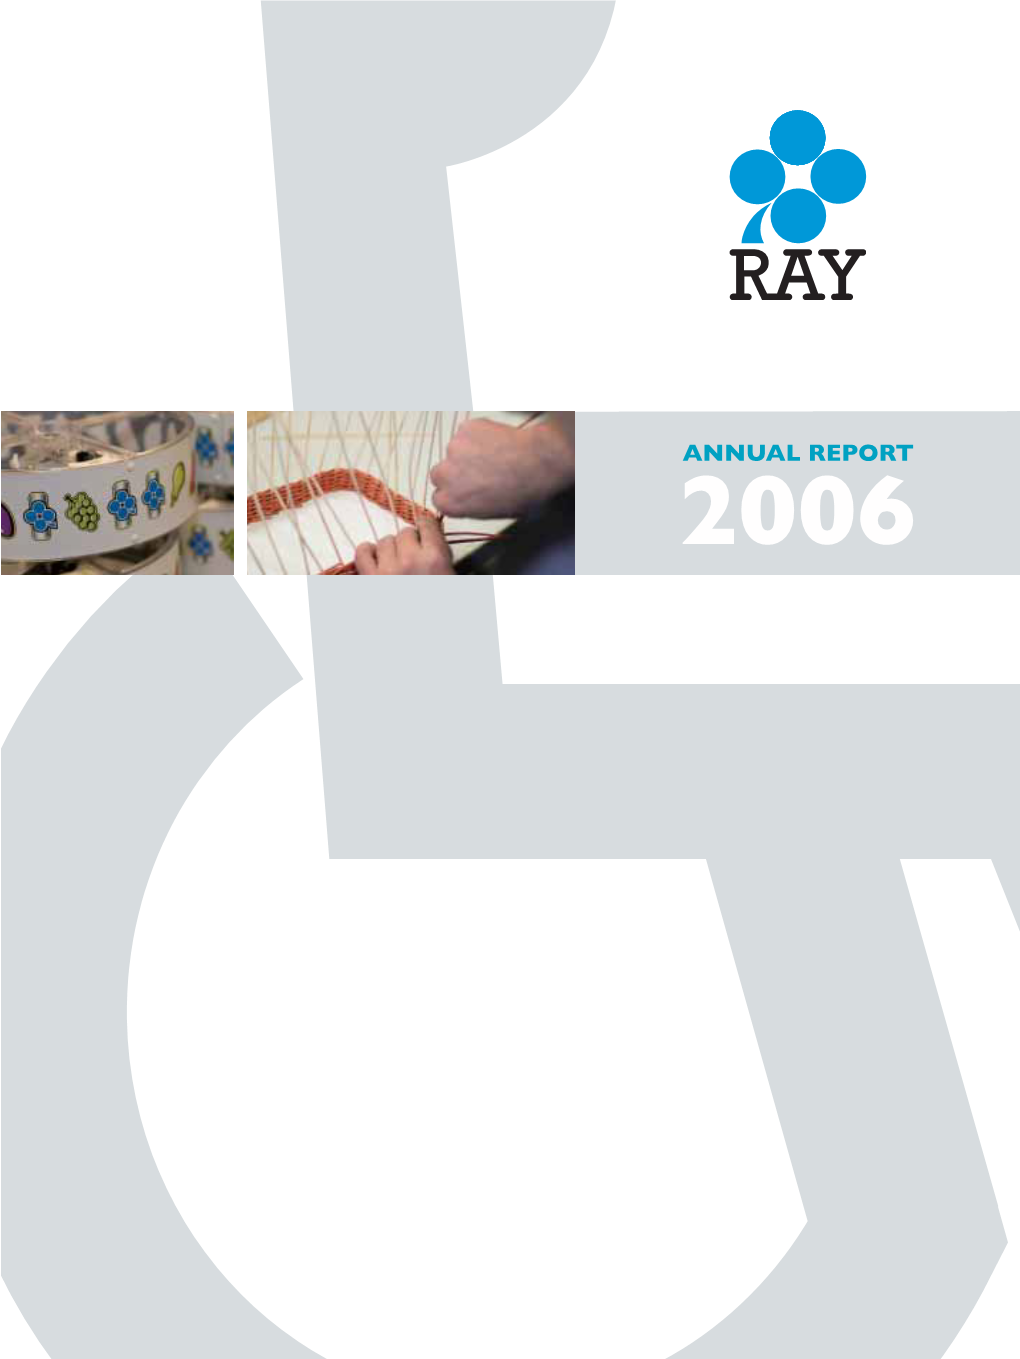 Raha-Automaattiyhdistys Annual Report 2006